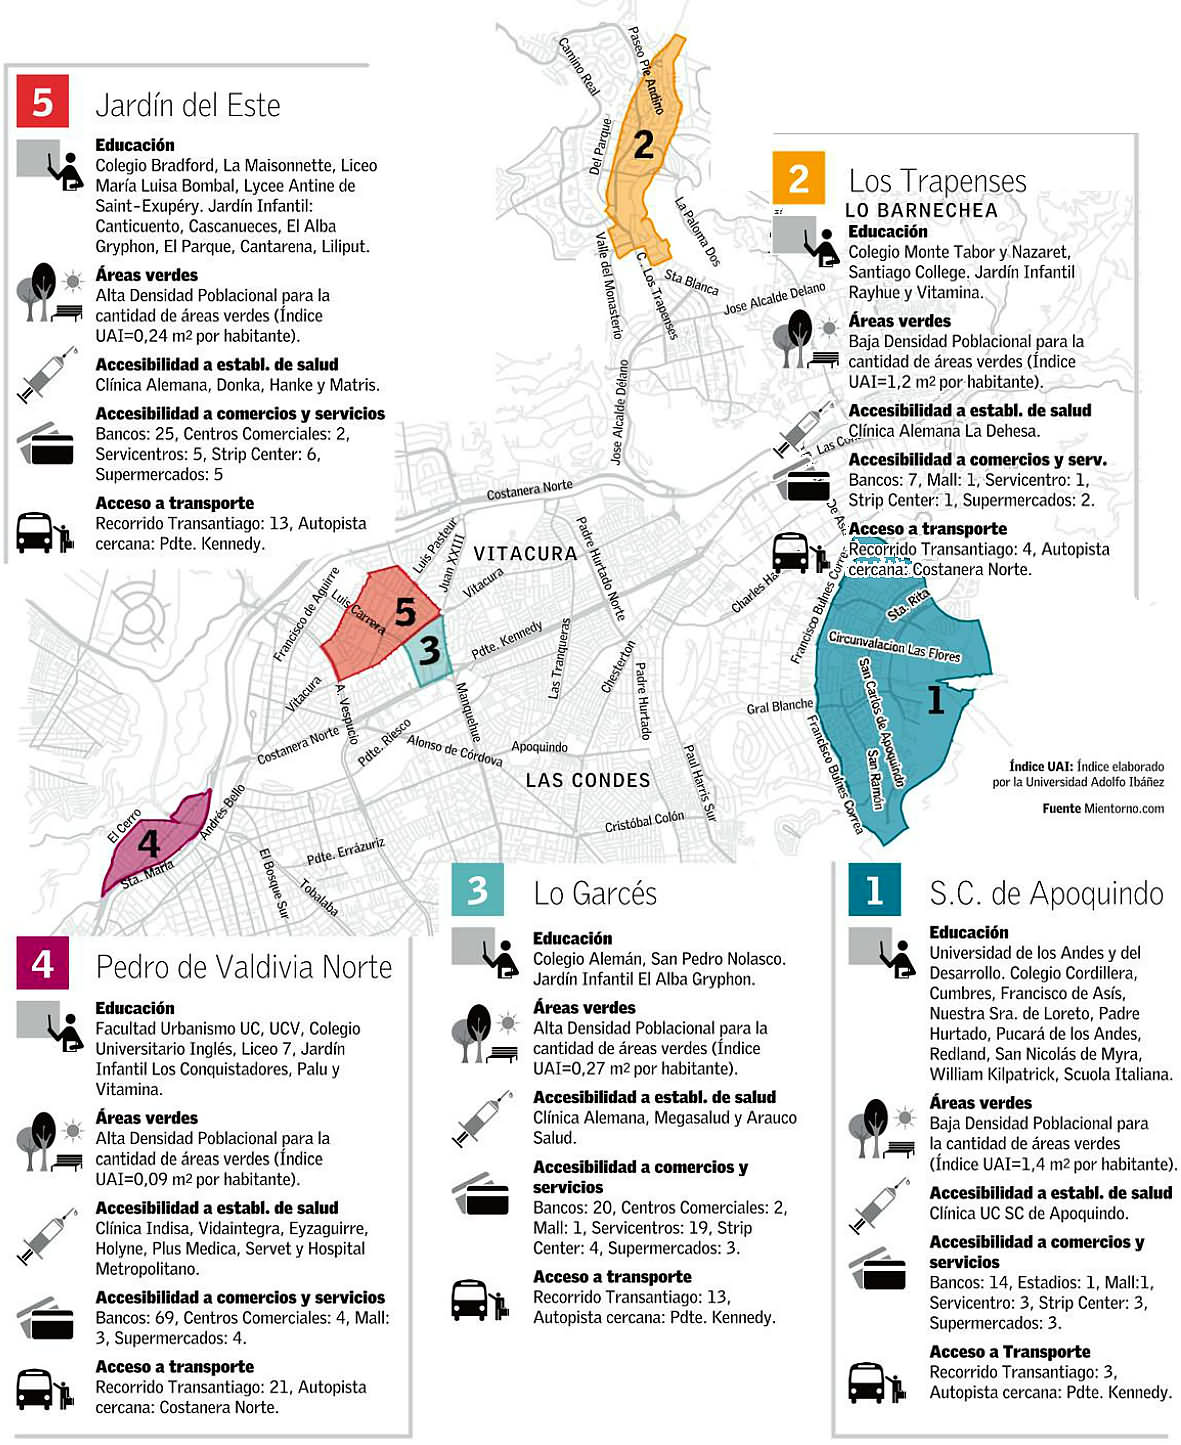 San Carlos de Apoquindo y Los Trapenses son los barrios con mejor equipamiento urbano